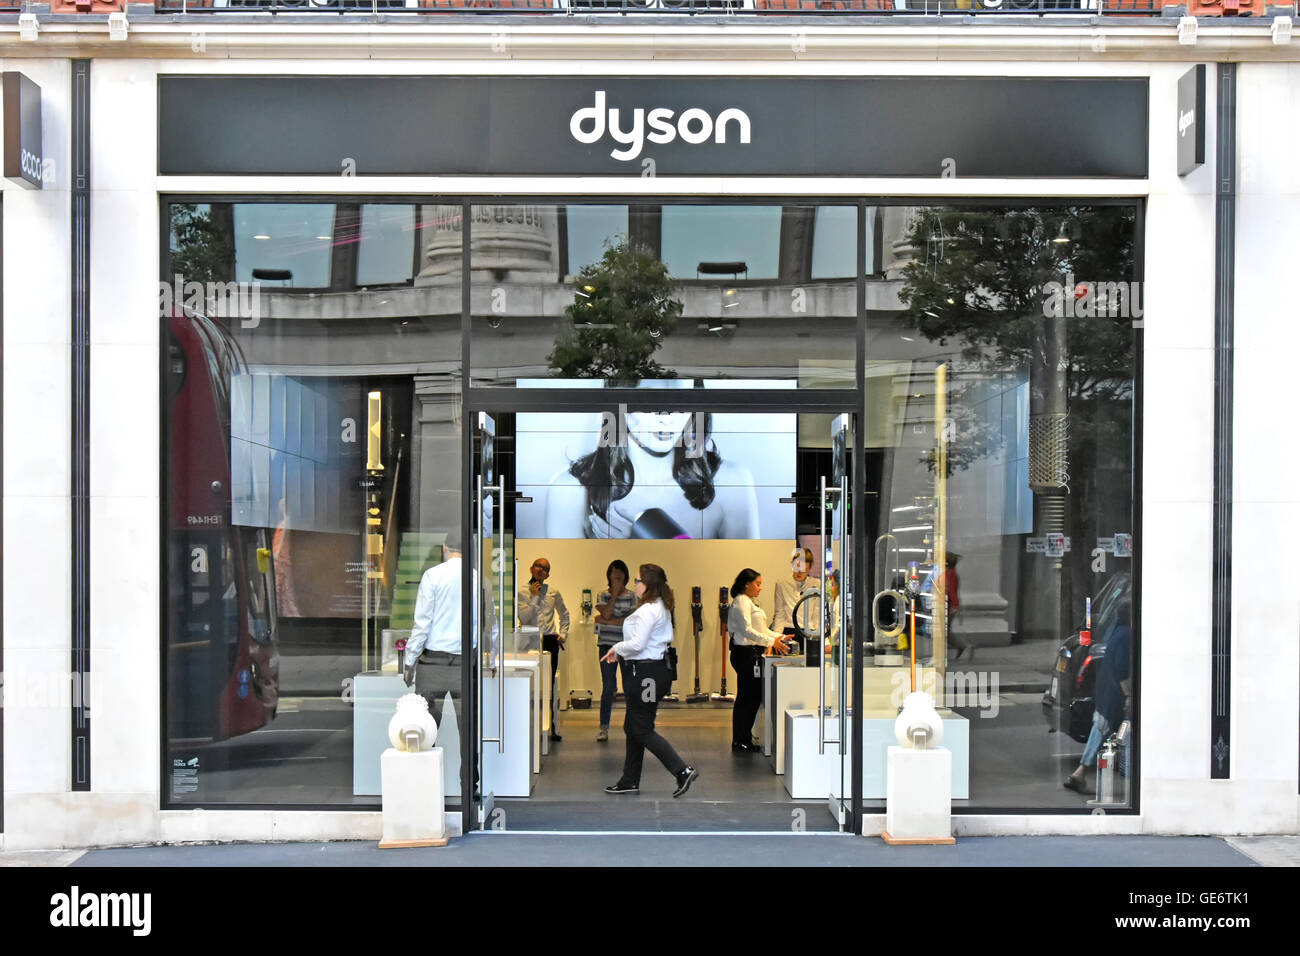 Entrée de la boutique Dyson dans Oxford Street West End London England UK avec affichage de l'intérieur d'aspirateurs Dyson Dyson et autres appareils domestiques Banque D'Images